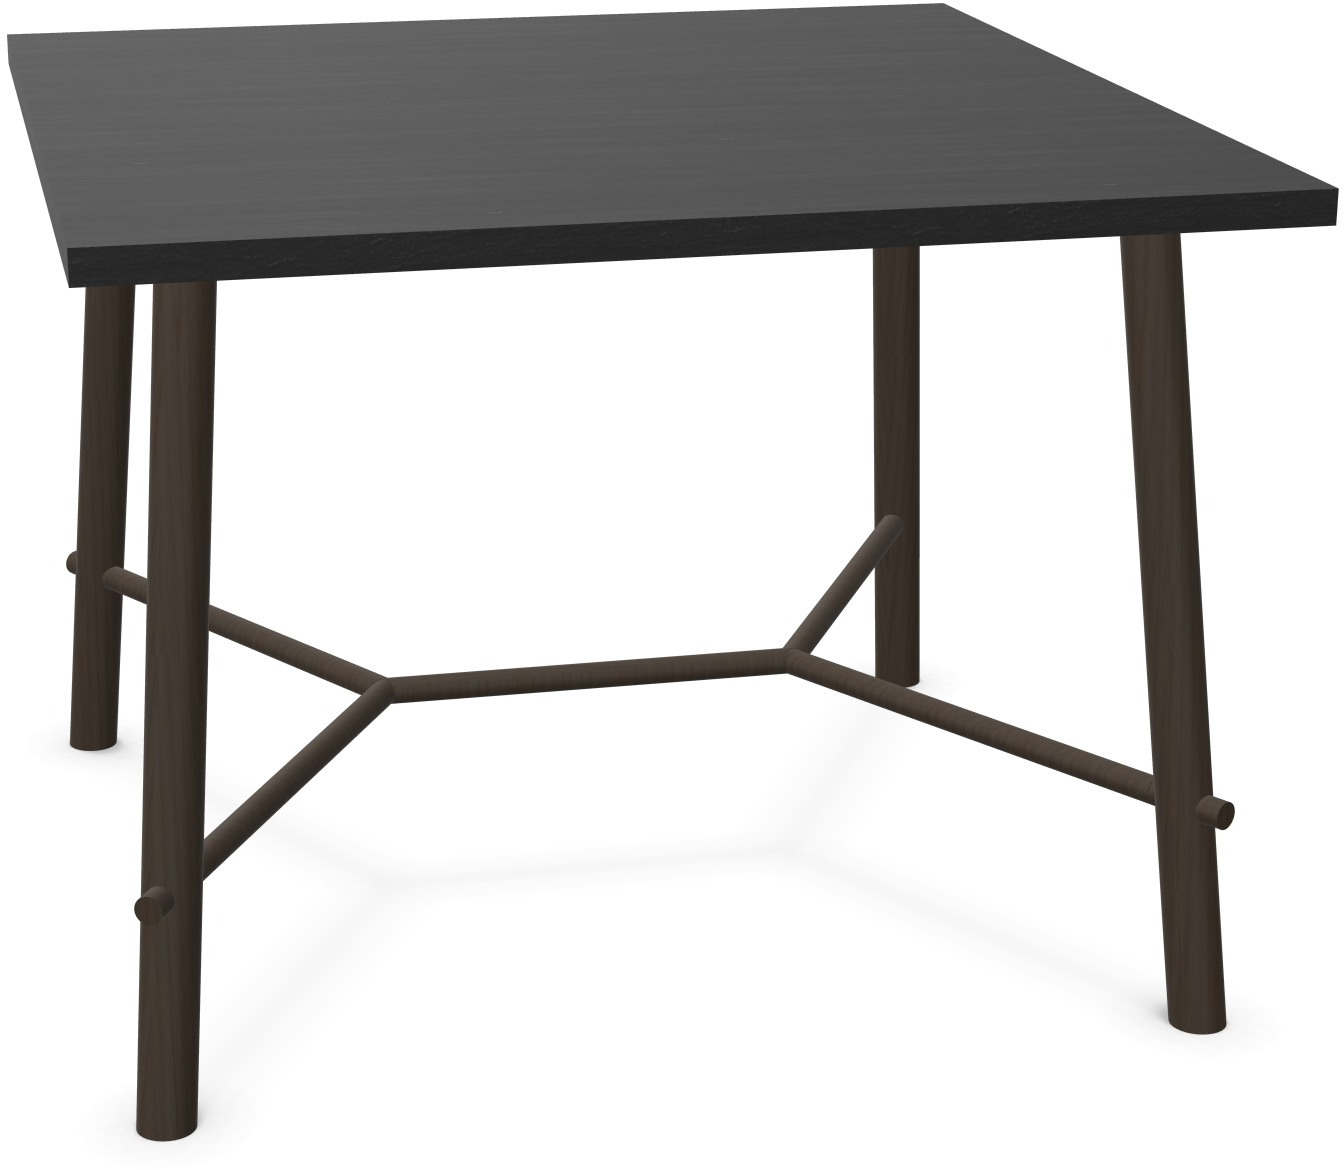 Record Living Tisch square in Eiche schwarz / Eiche schwarz präsentiert im Onlineshop von KAQTU Design AG. Esstisch ist von Infiniti Design